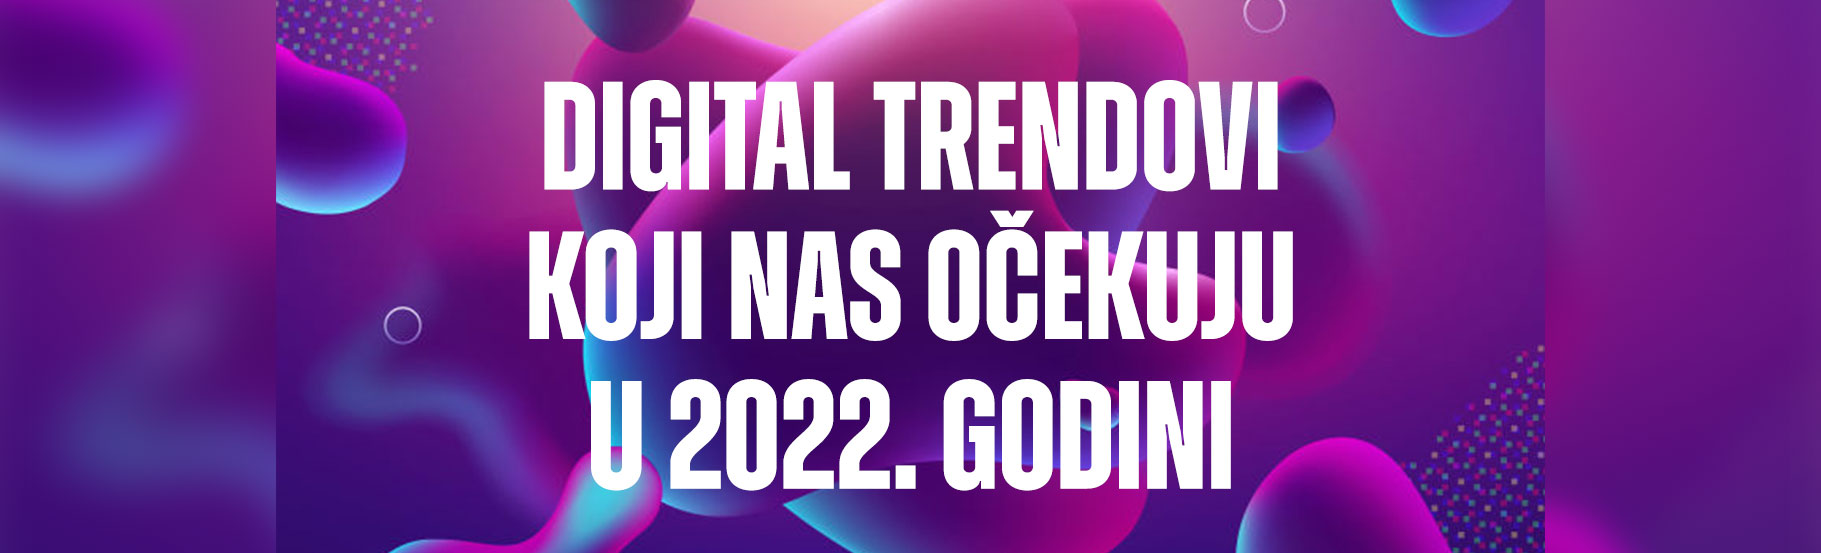 Digital trendovi koji nas očekuju u 2022. godini